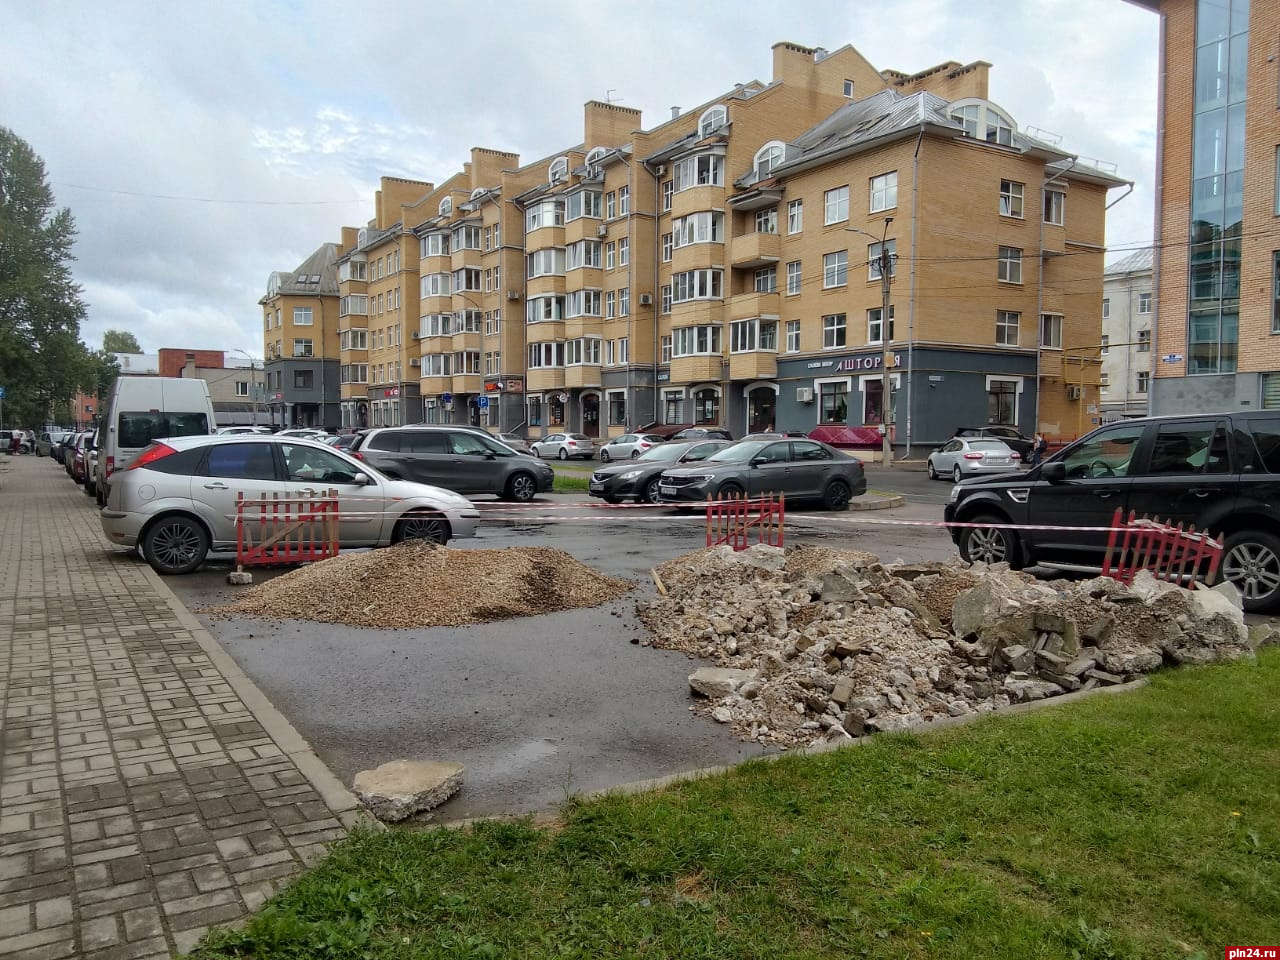 Строительный мусор занял часть парковки на улице Льва Толстого в Пскове